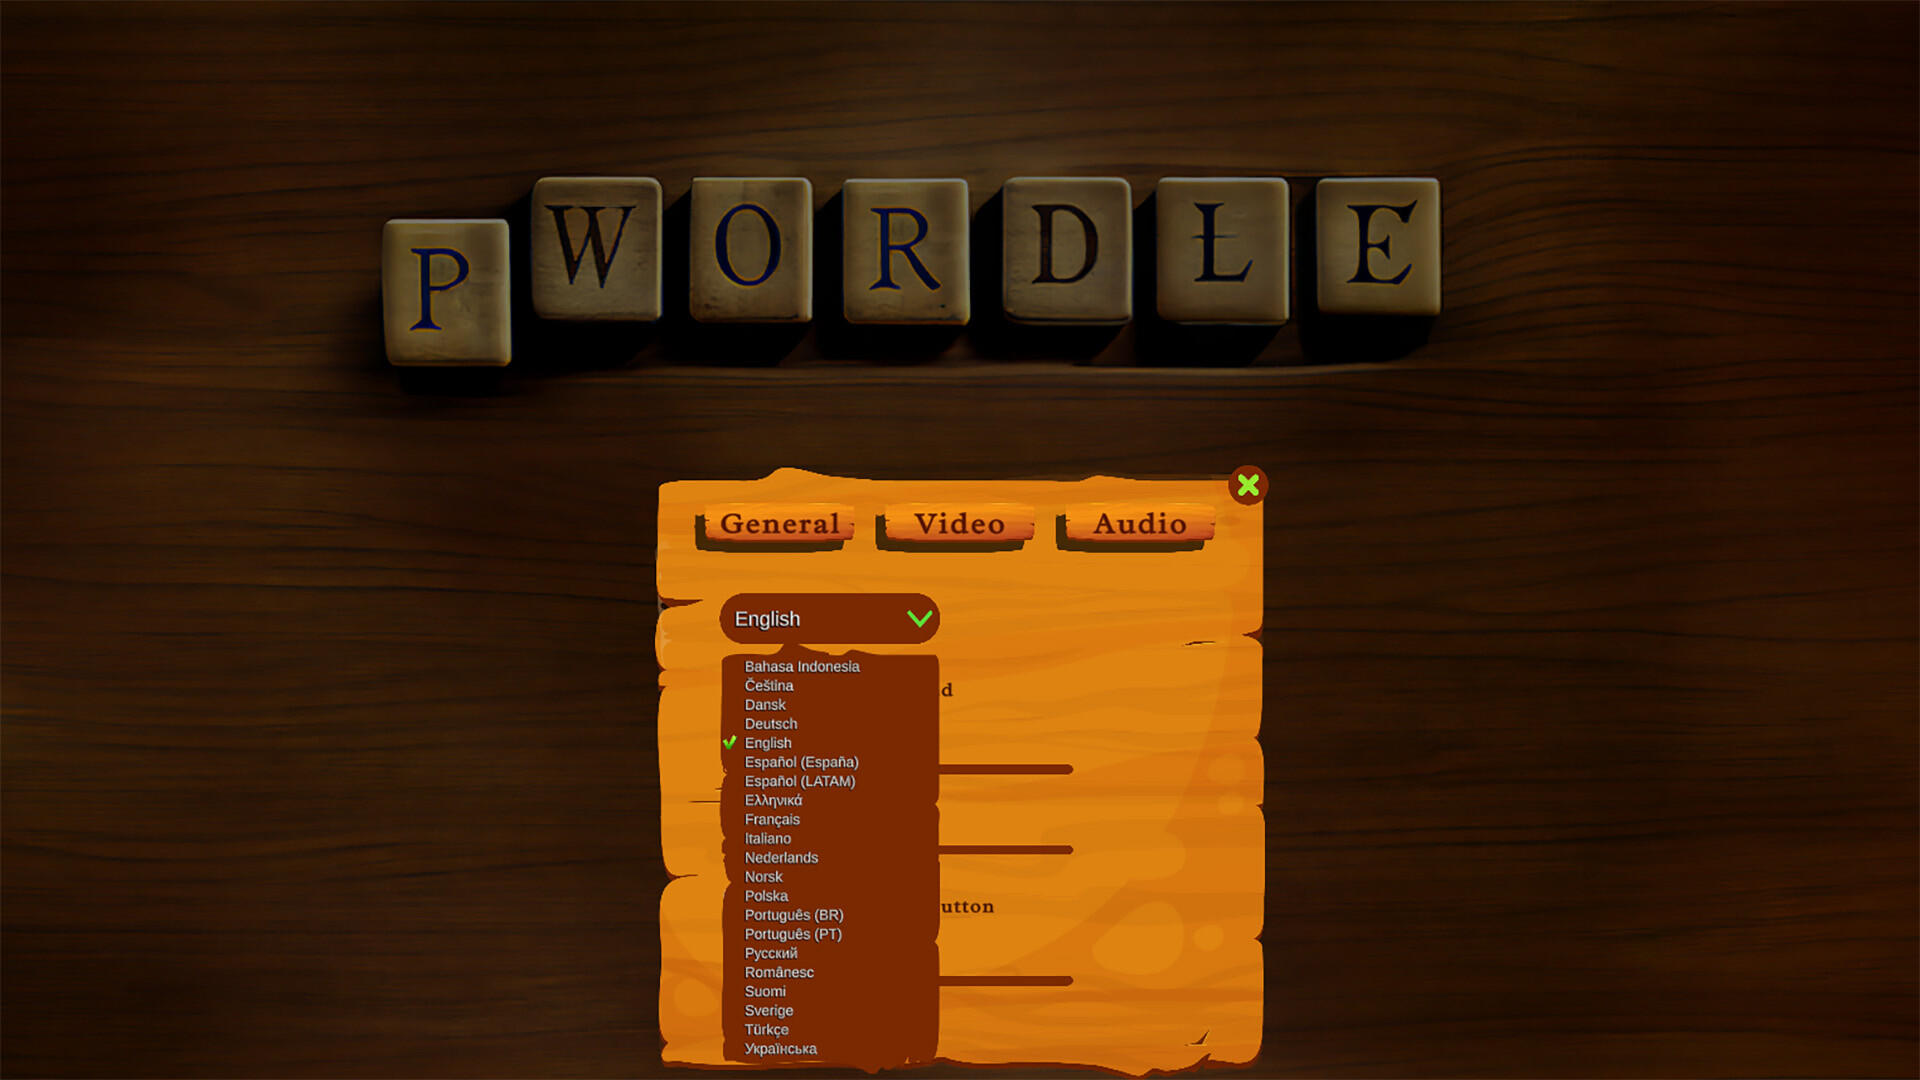 Screenshot of pWordle